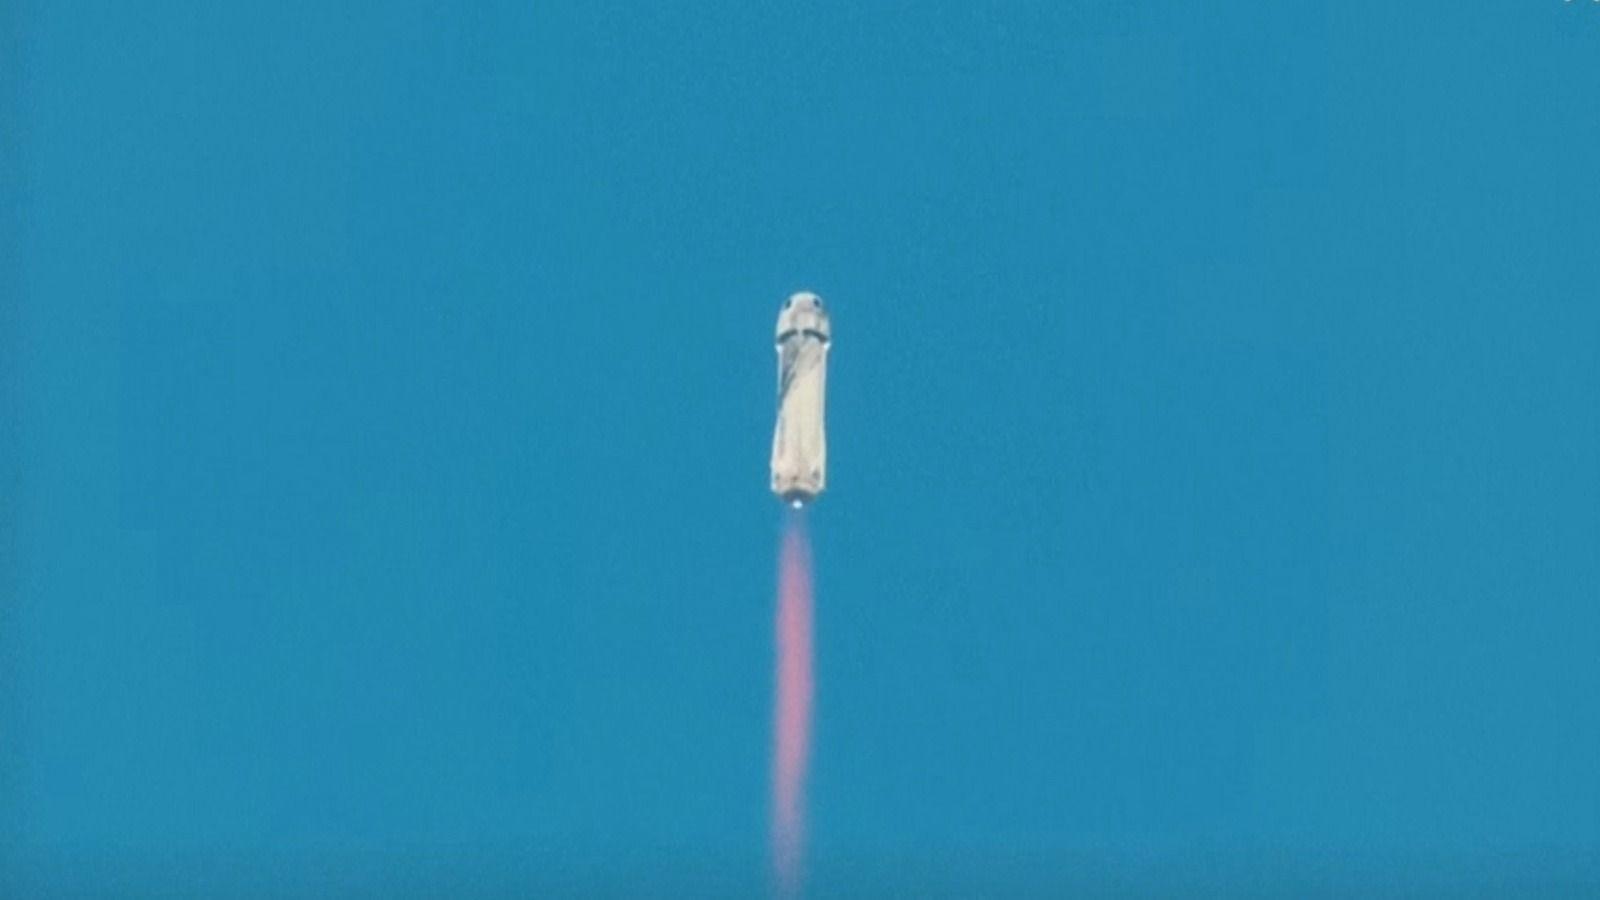 Jeff Bezos, călătorie istorică de 10 minute în spaţiu. Momentul lansării rachetei New Shepard. VIDEO